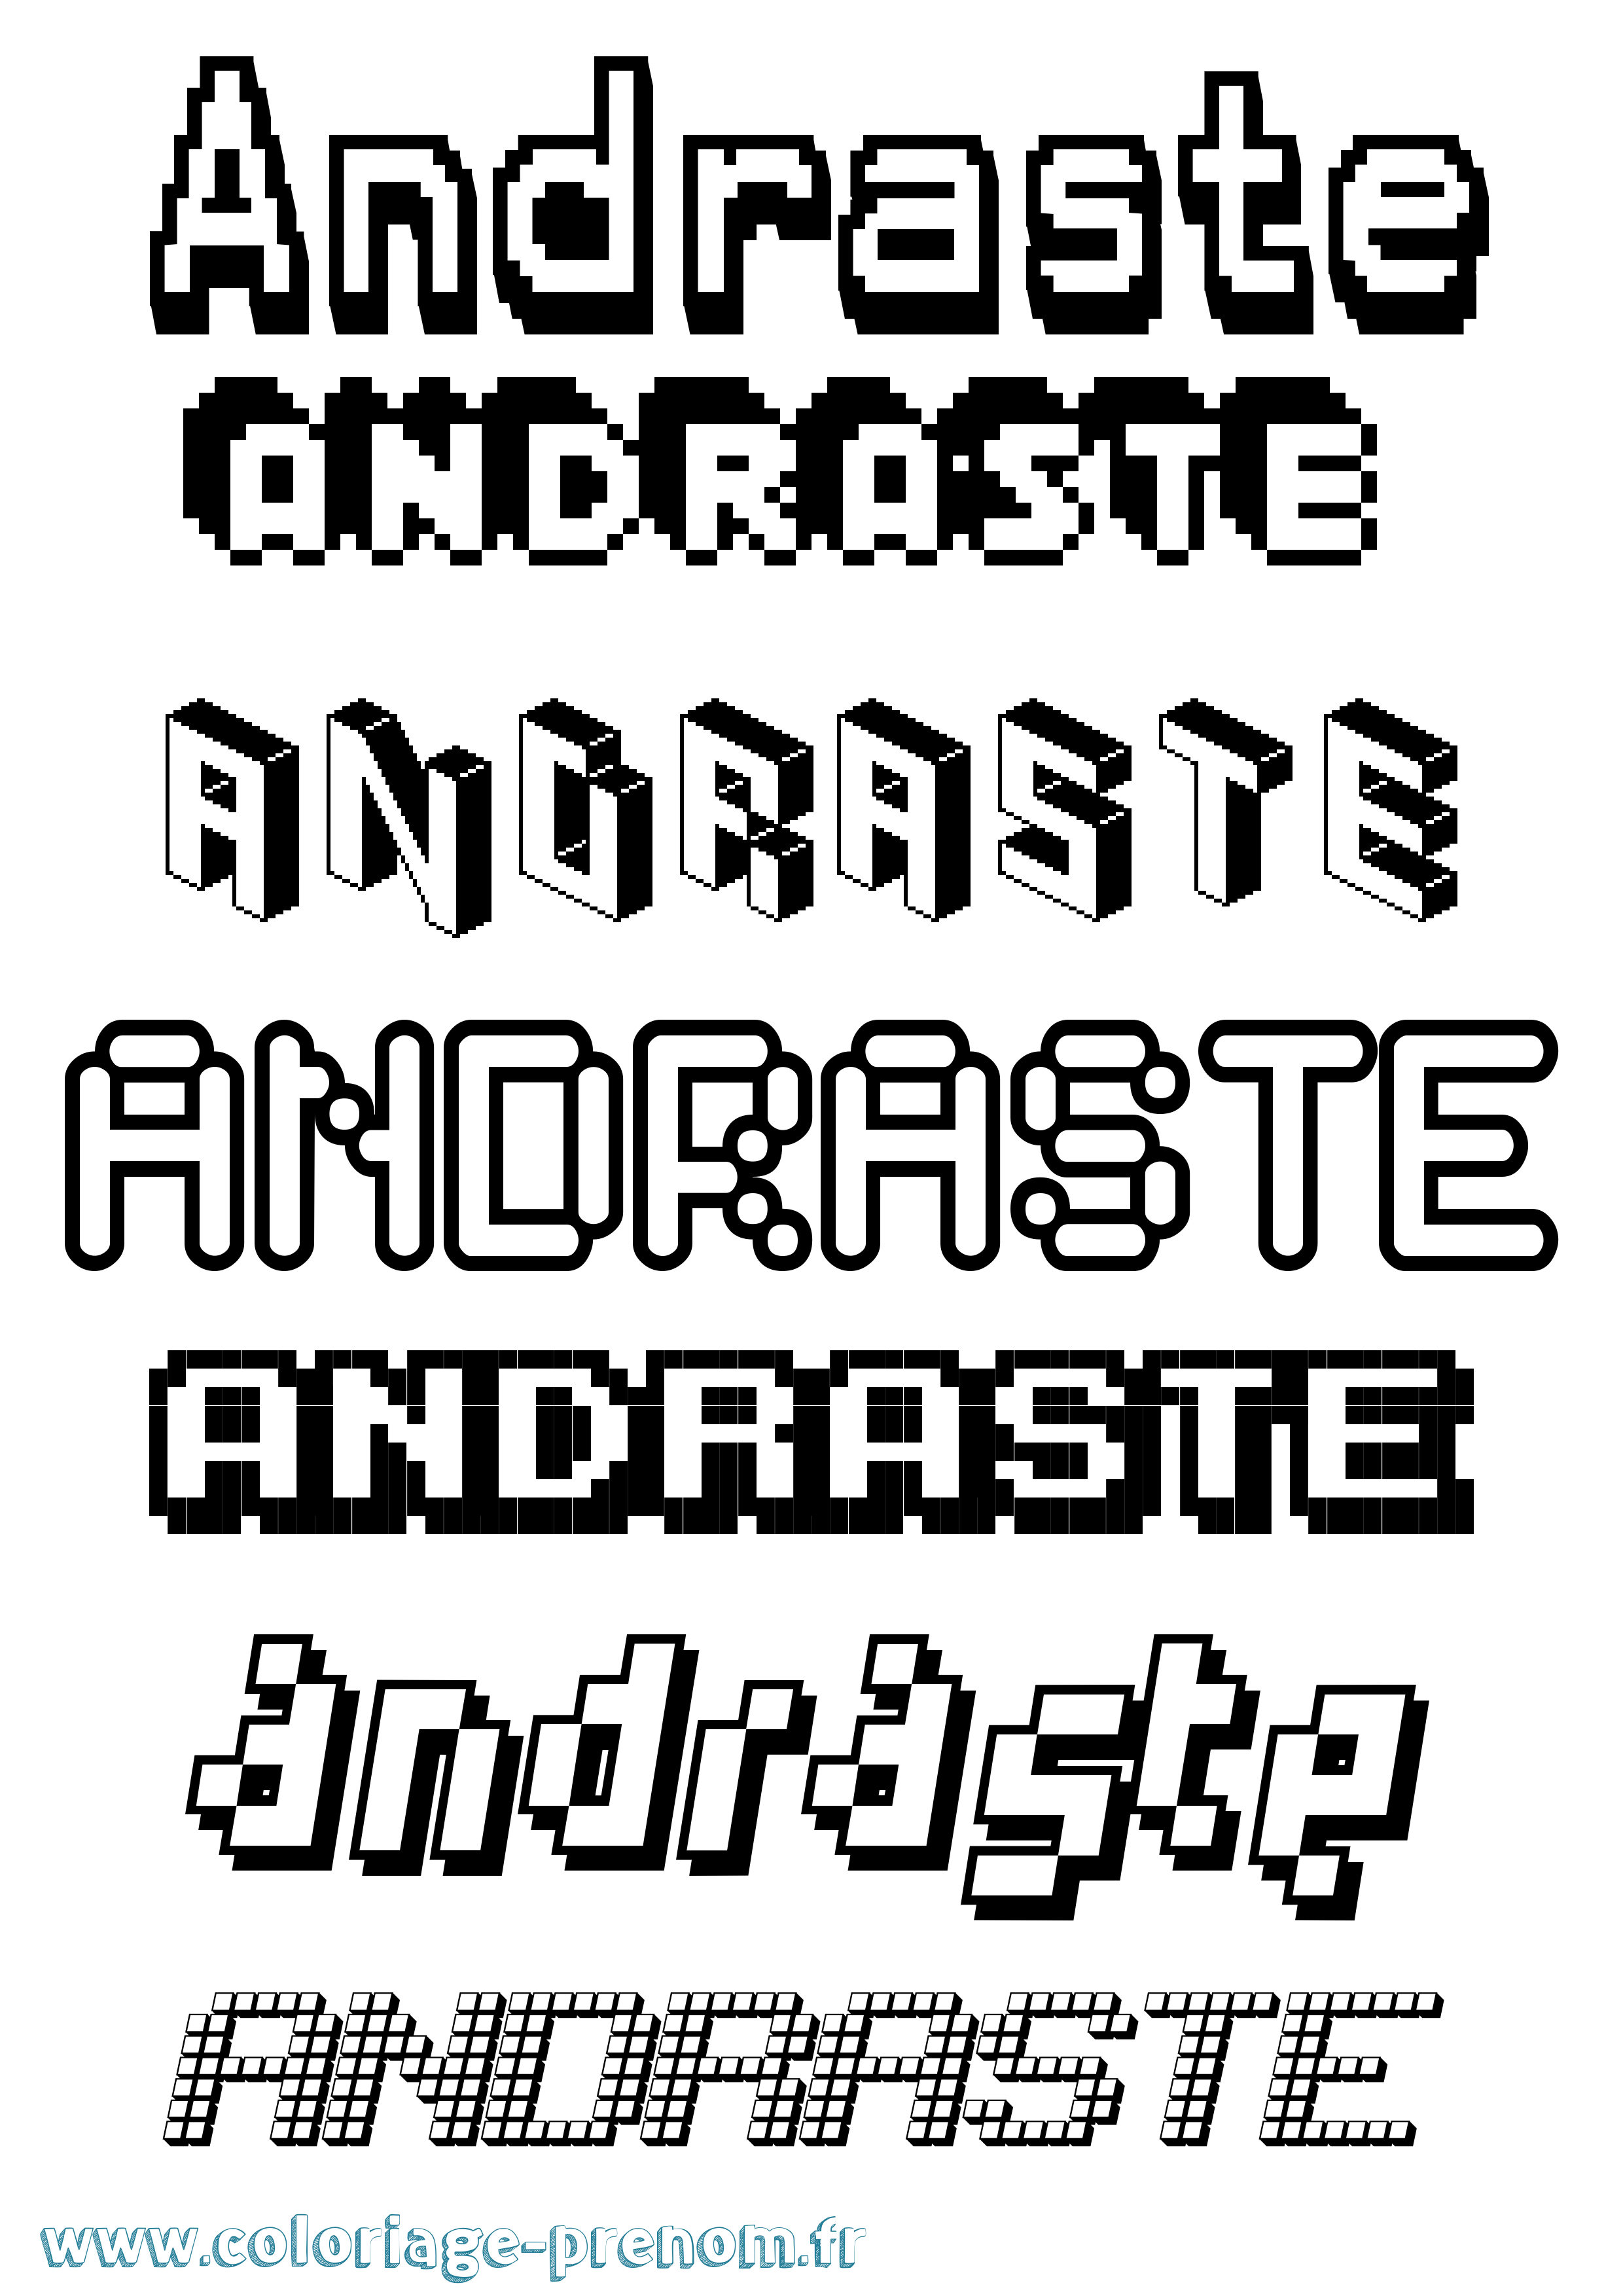 Coloriage prénom Andraste Pixel